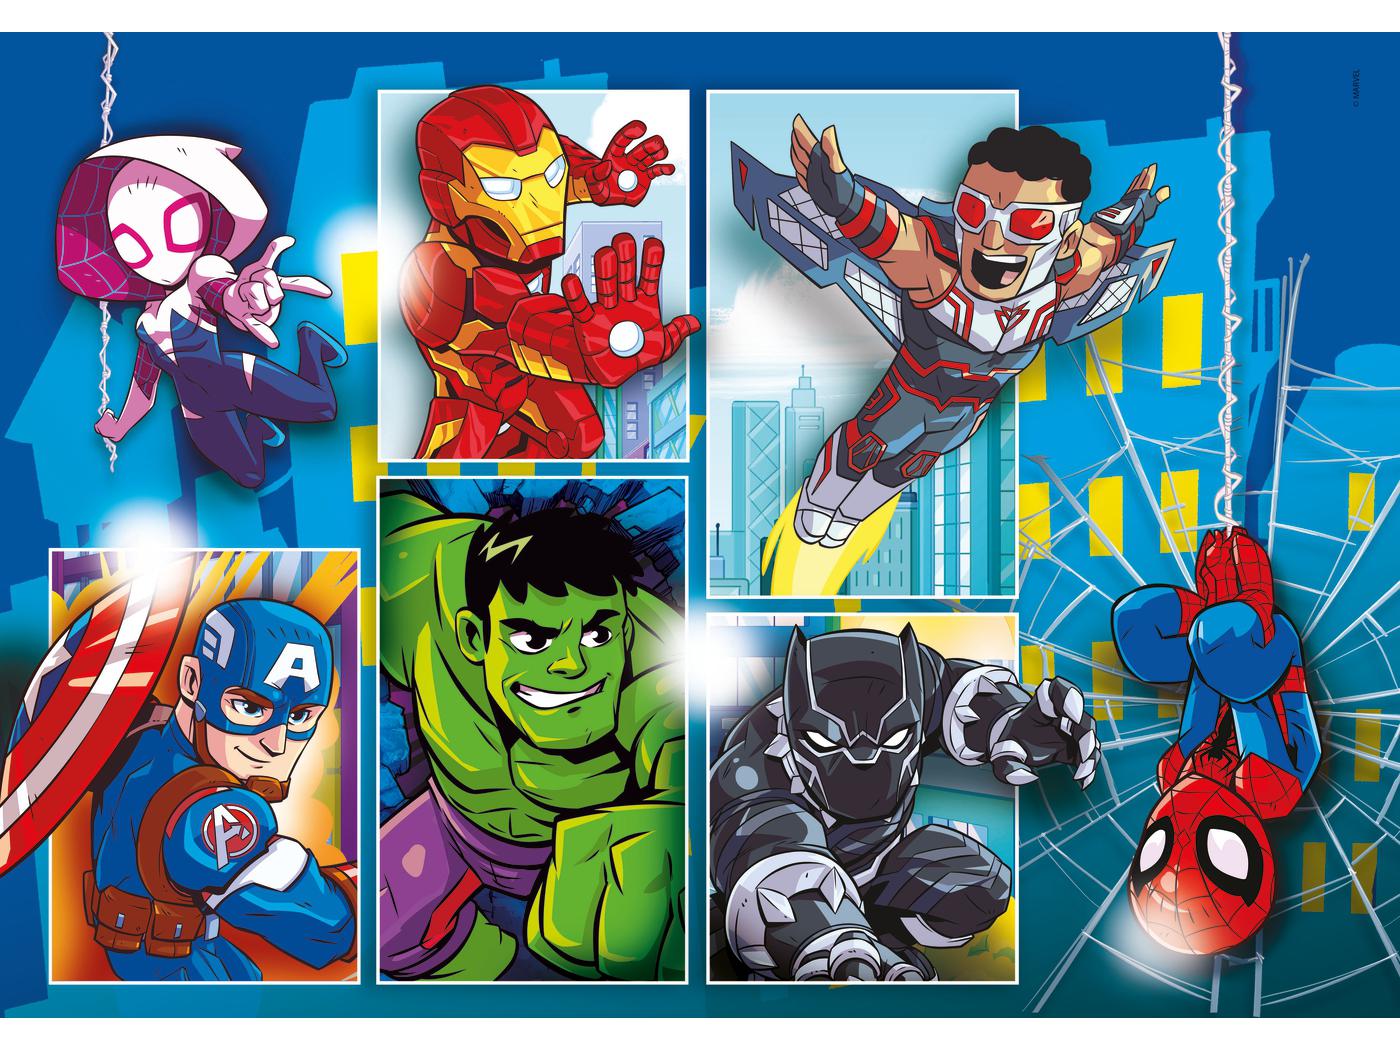 Clementoni - Puzzle enfant, 30 pièces - Marvel Super Hero